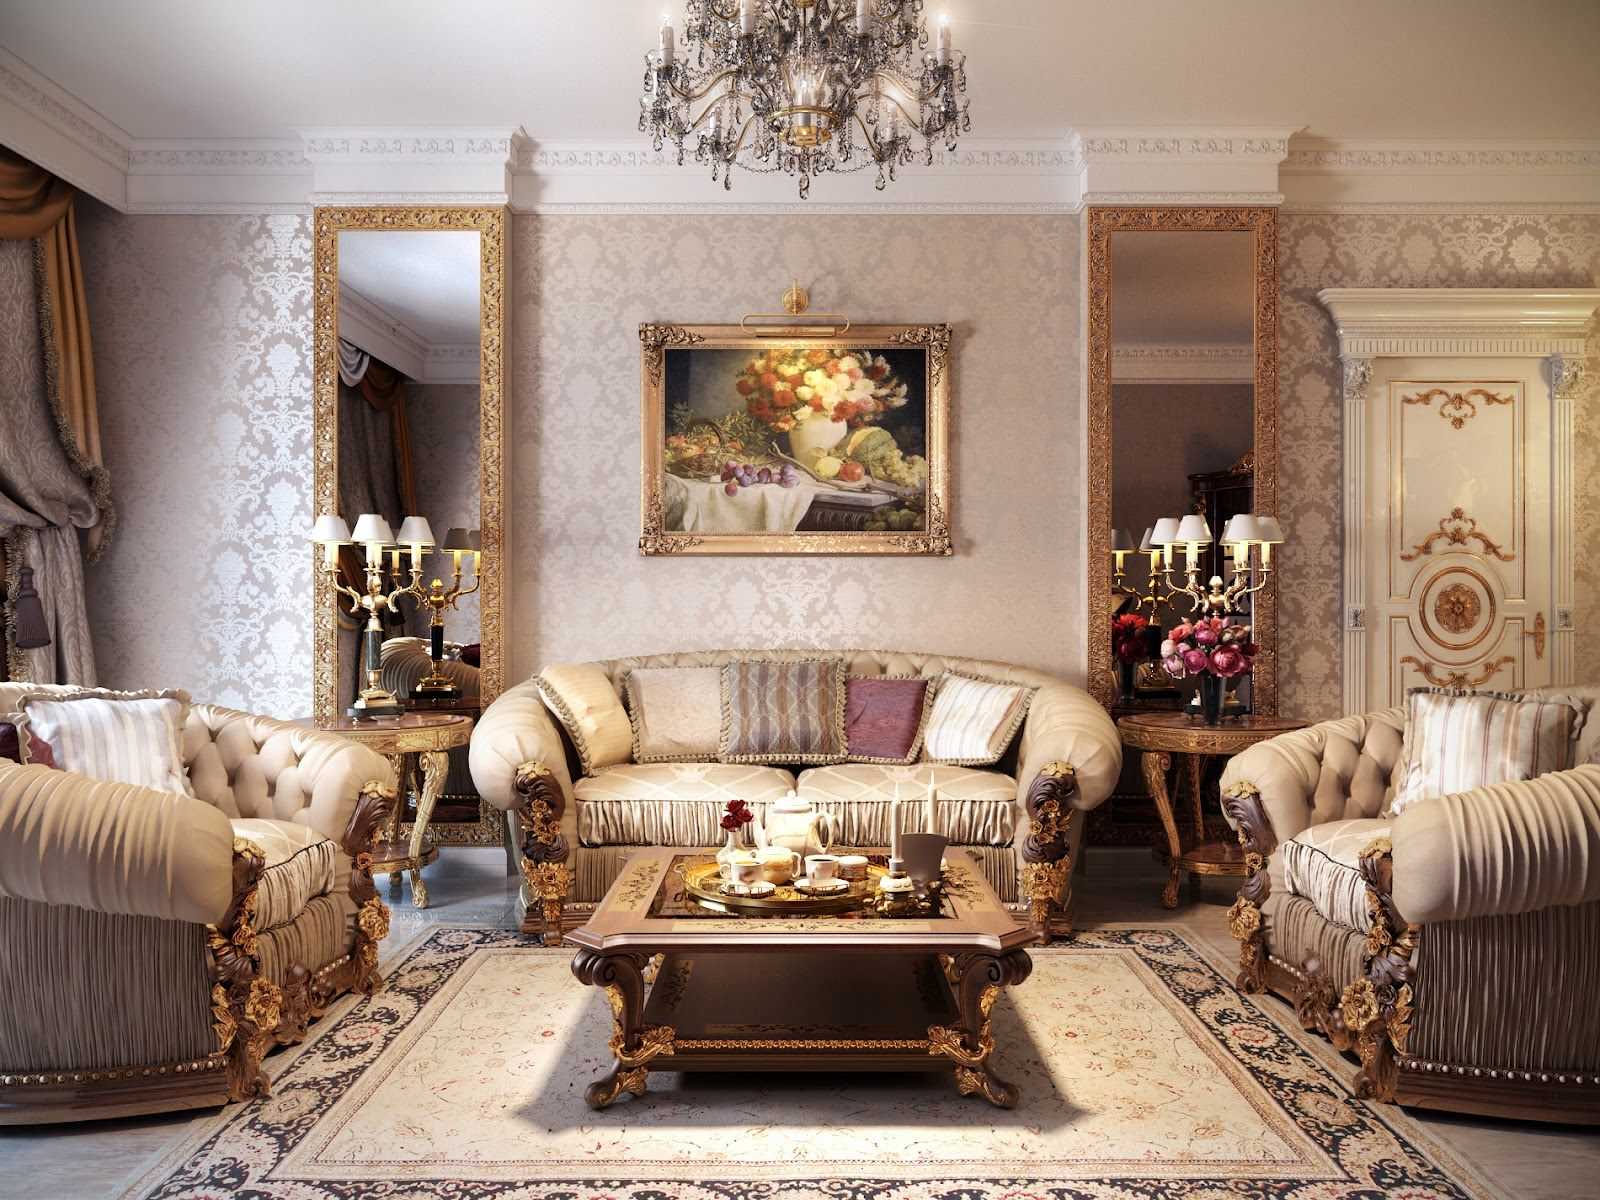 Гостиная в стиле барокко: 100 красивых фото-идей - дизайн интерьера